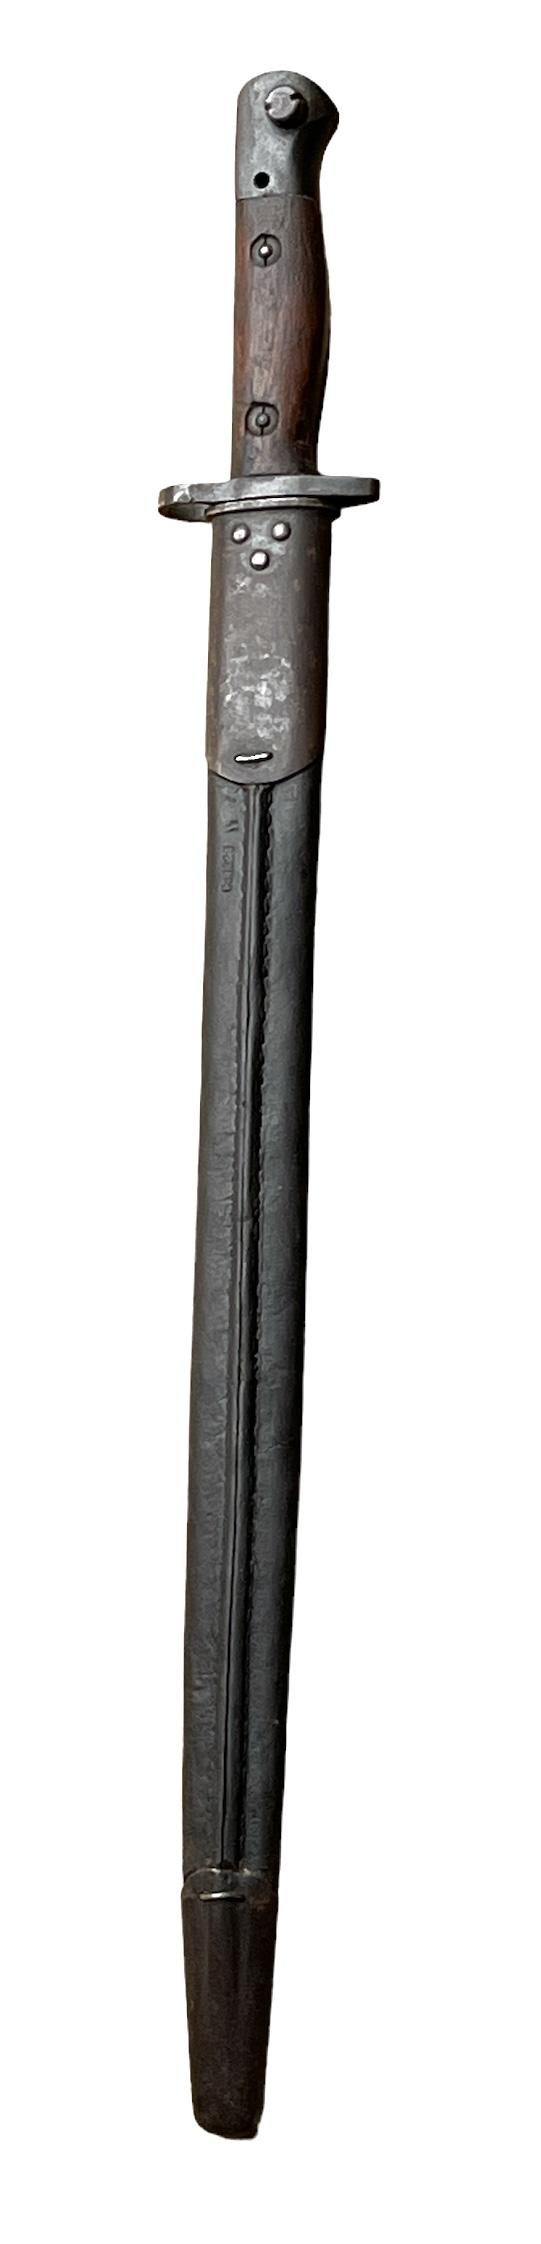 Russian model 1843 Bayonet